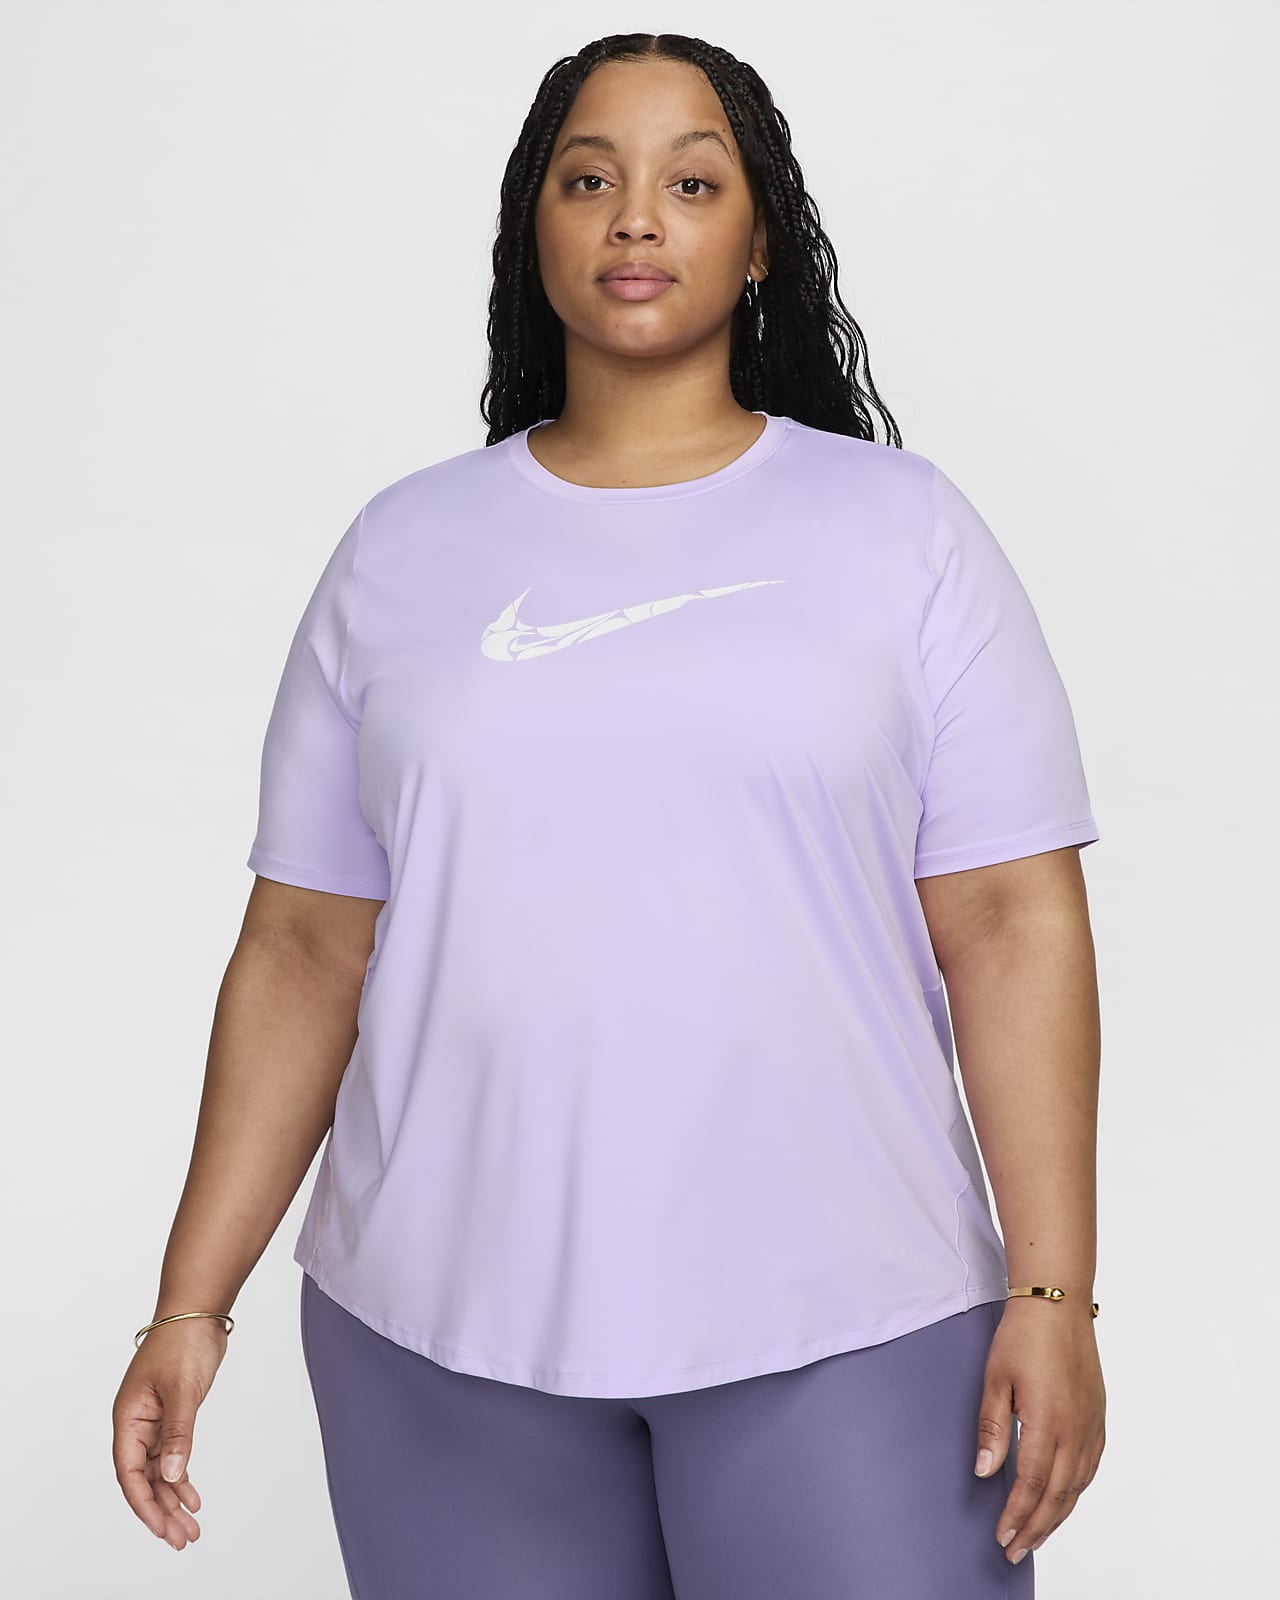 Damska koszulka do biegania z krótkim rękawem Dri-FIT Nike One Swoosh (duże rozmiary)